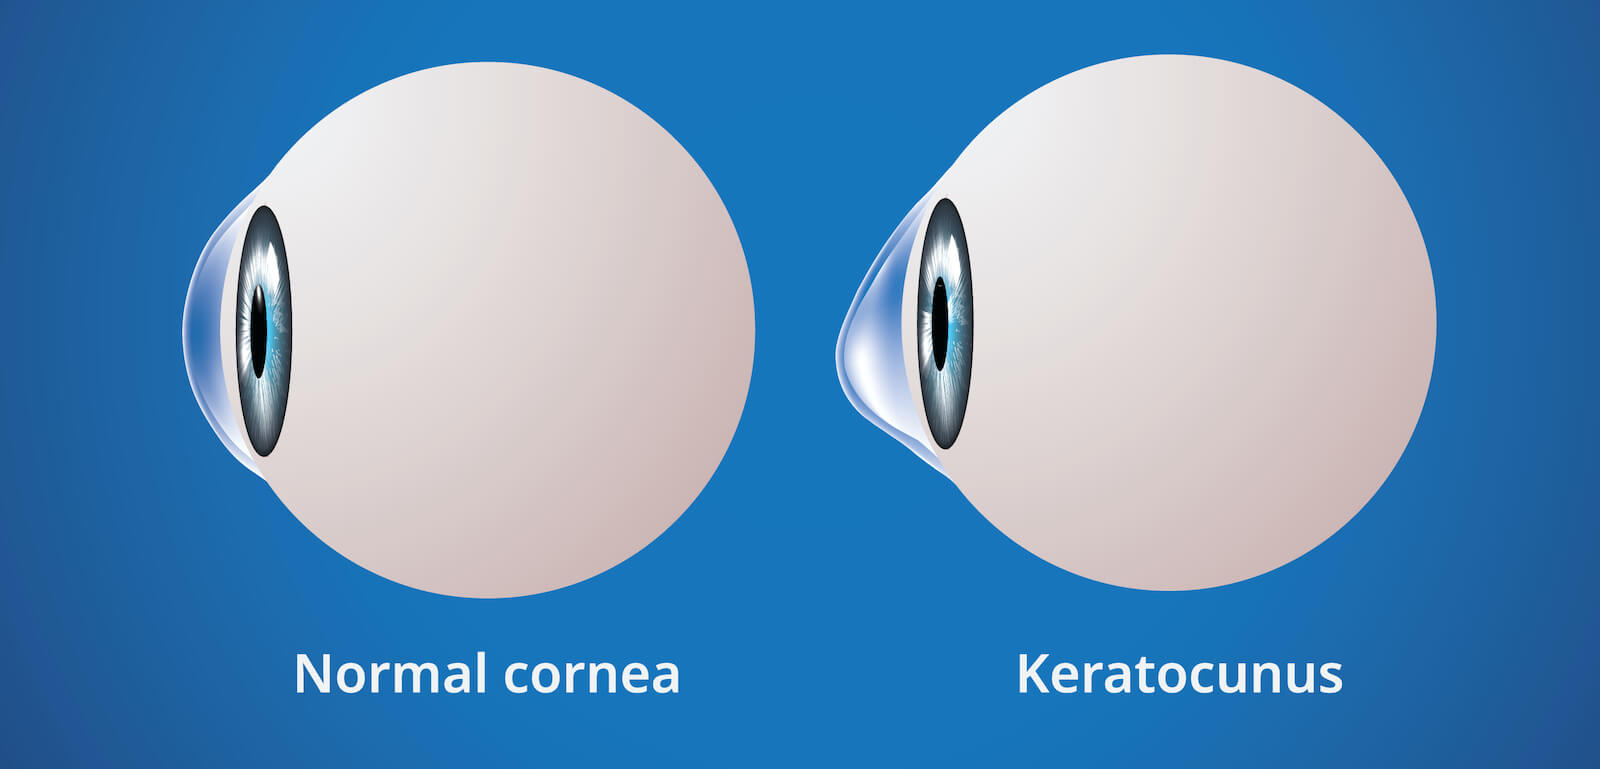 Comparison or norma cornea and keratoconus